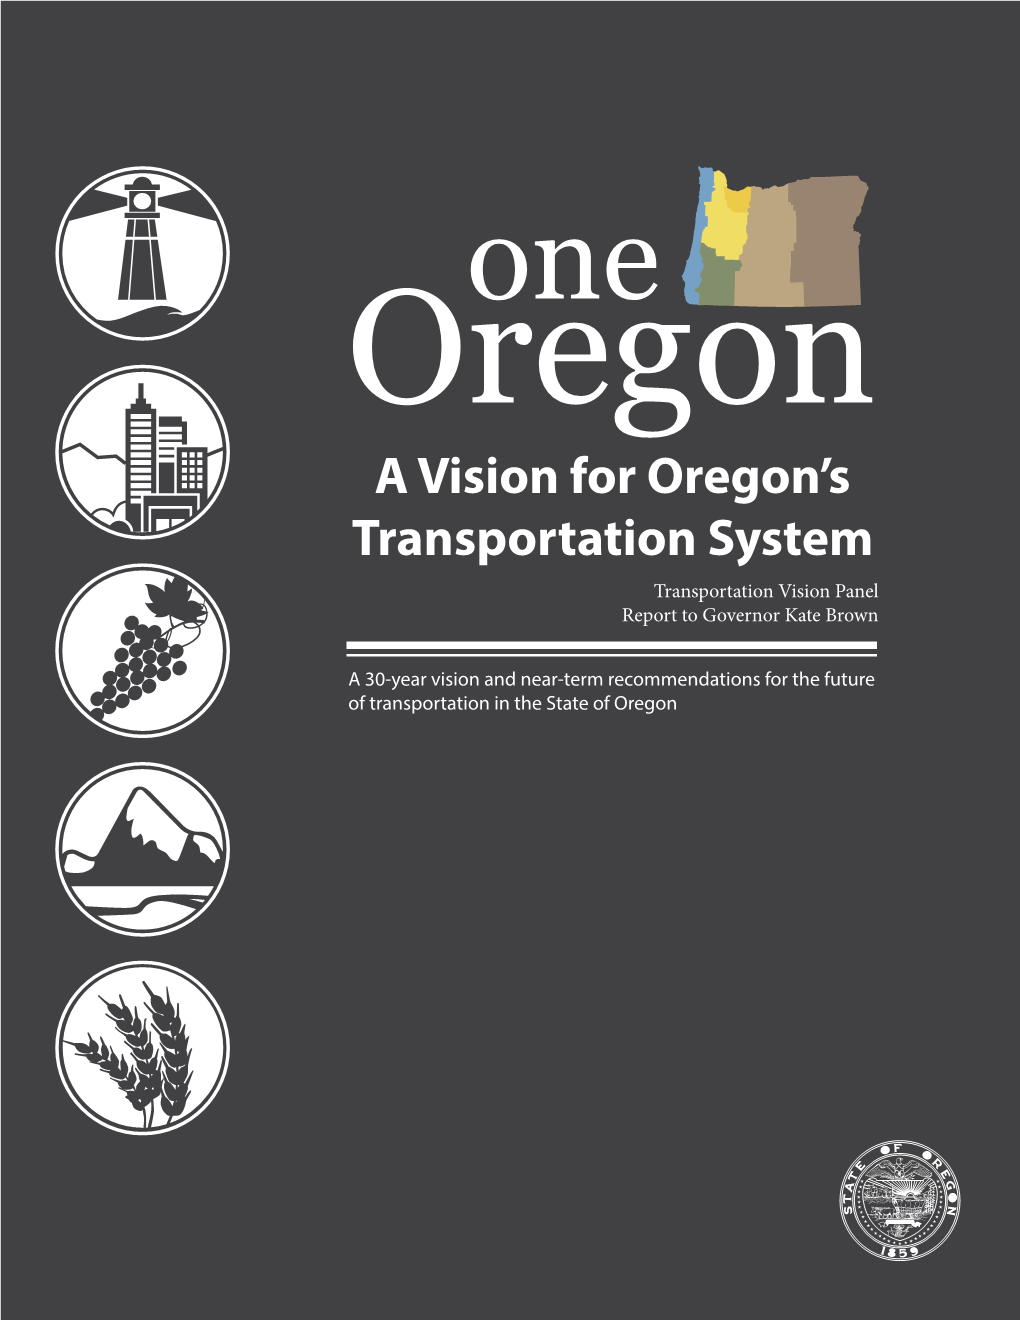 A Vision for Oregon's Transportation System